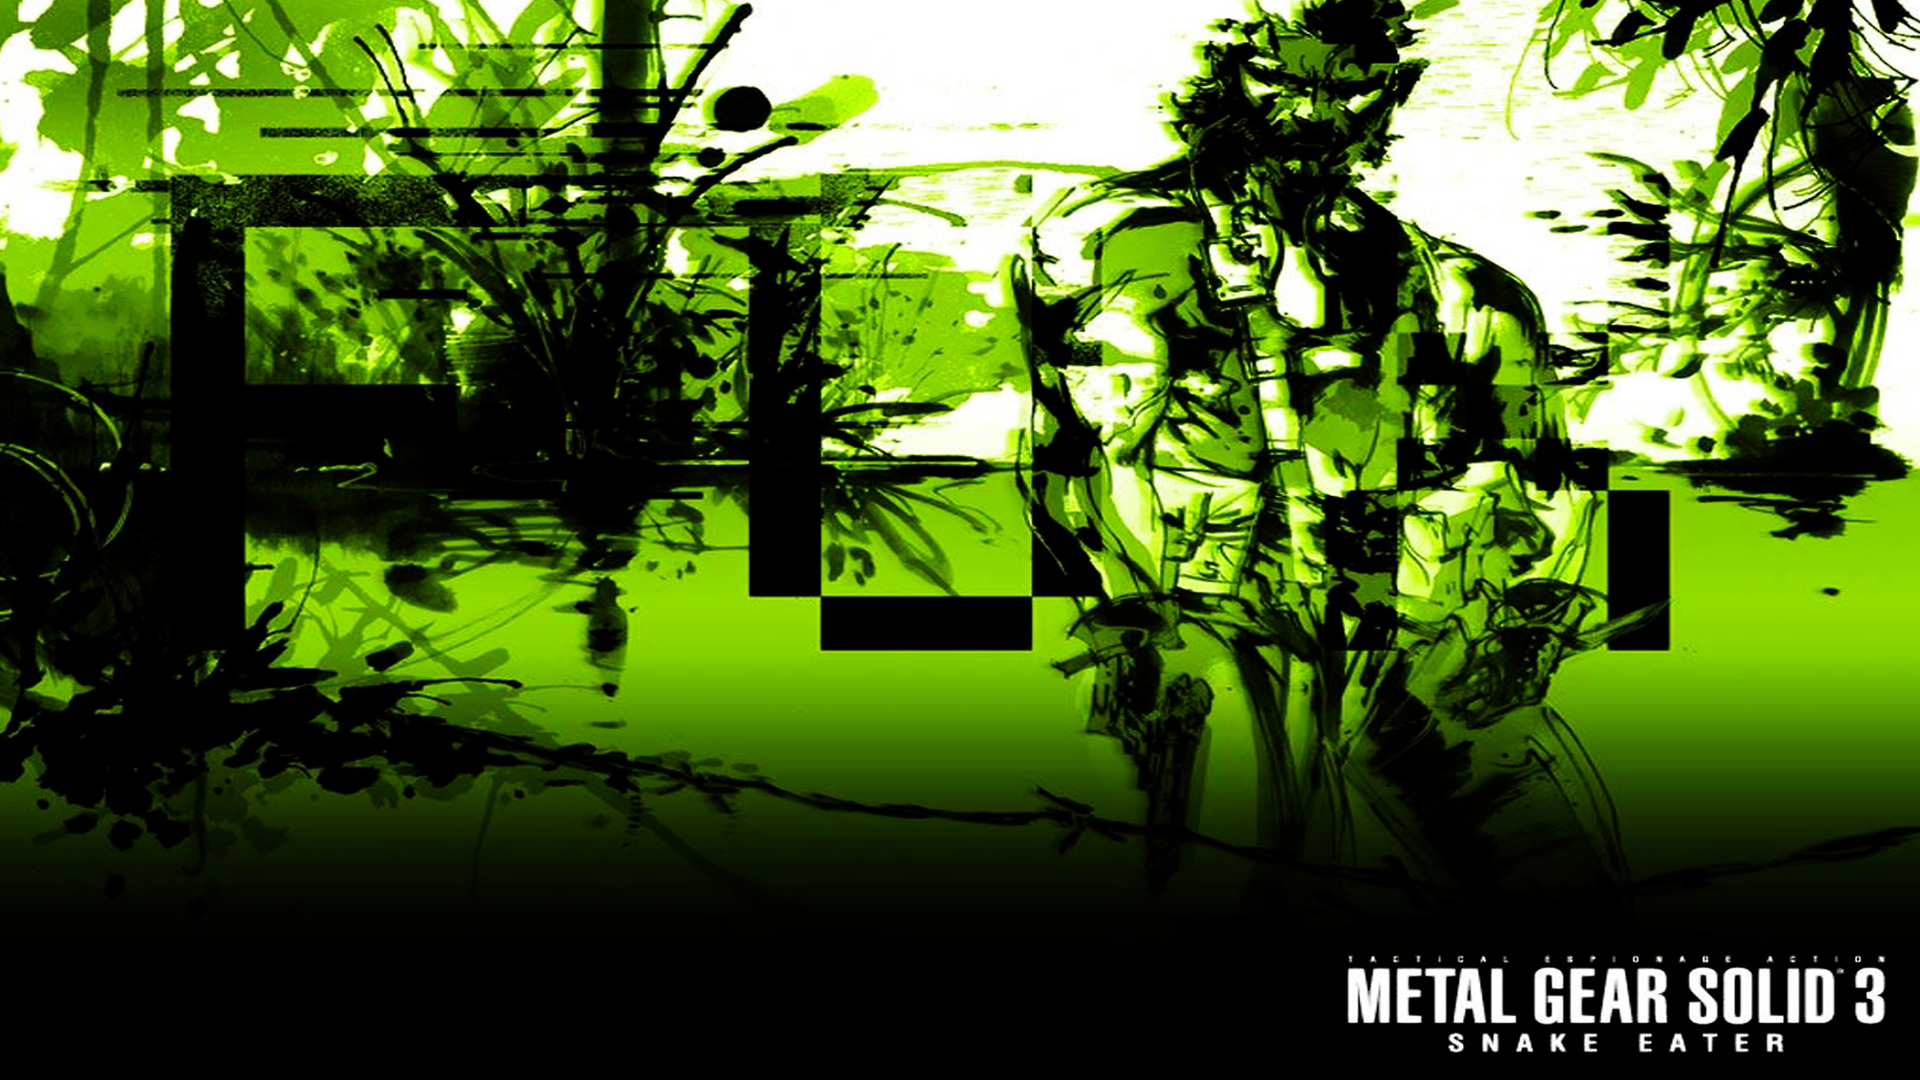 Free Metal Gear Solid 3 Wallpaper In - Metal Gear Solid 3 Snake Eater Wallpaper Ipad - HD Wallpaper 